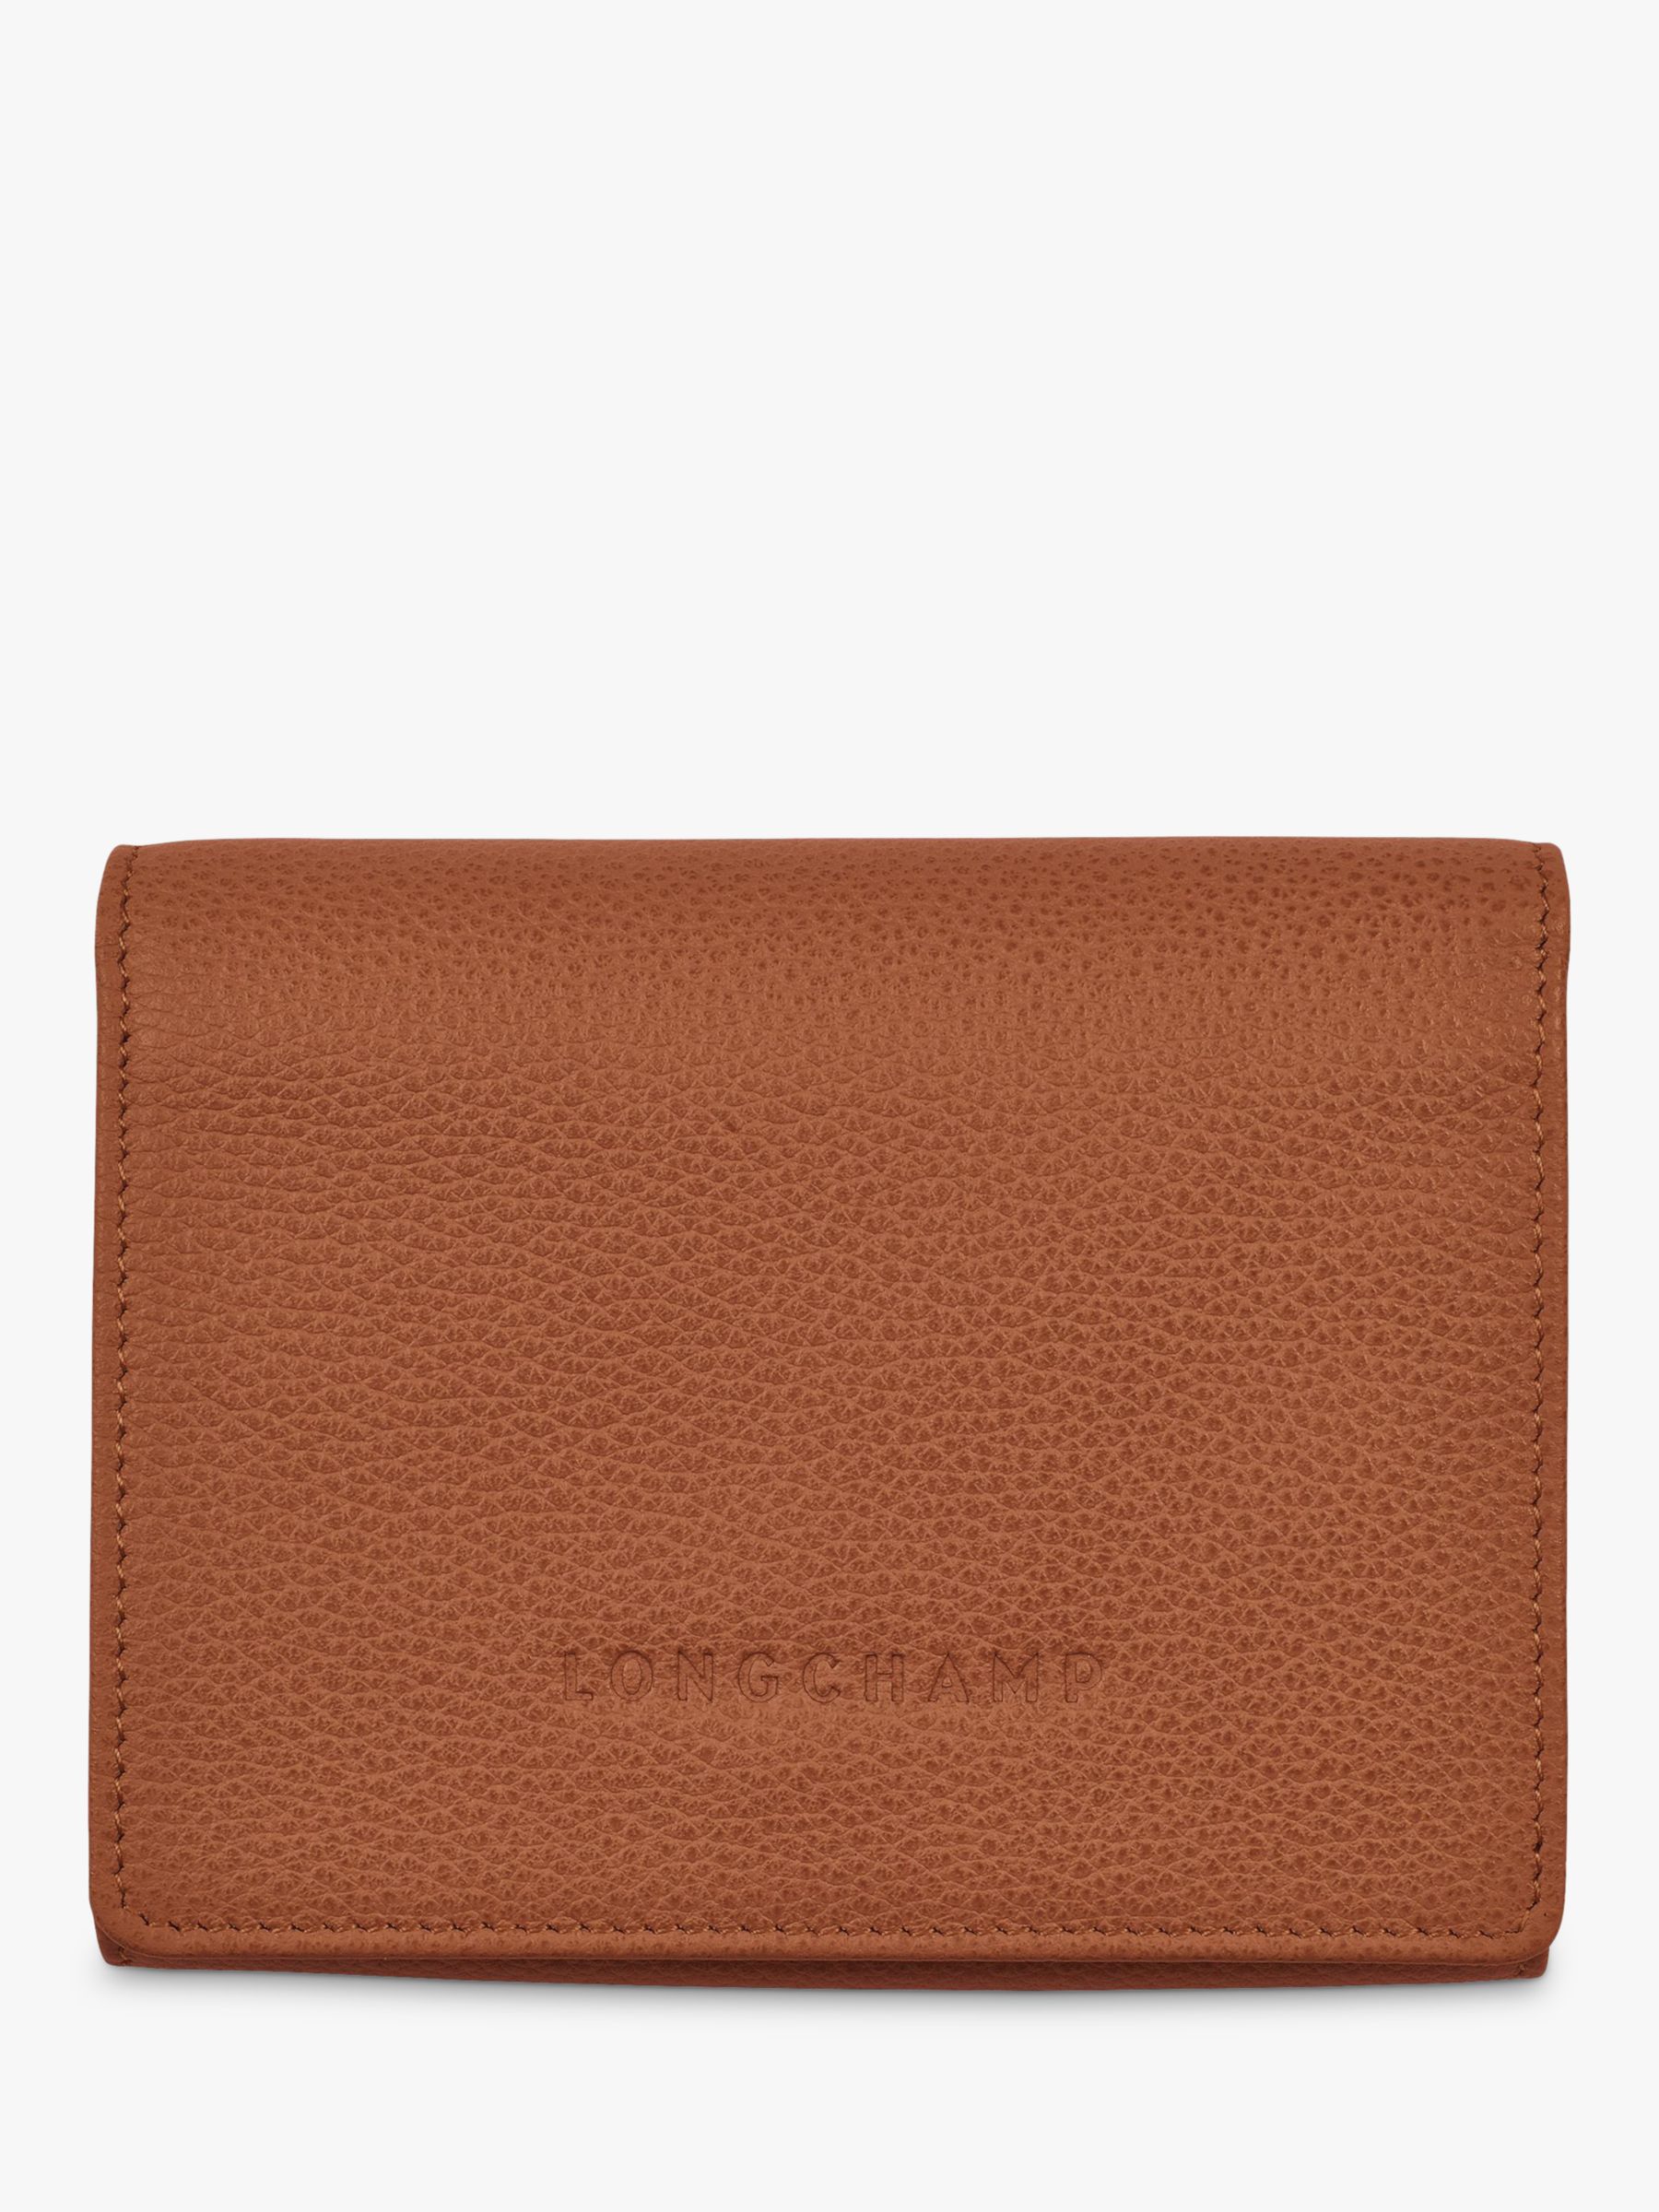 Longchamp Le Foulonné Compact Leather Wallet, Caramel at John Lewis ...